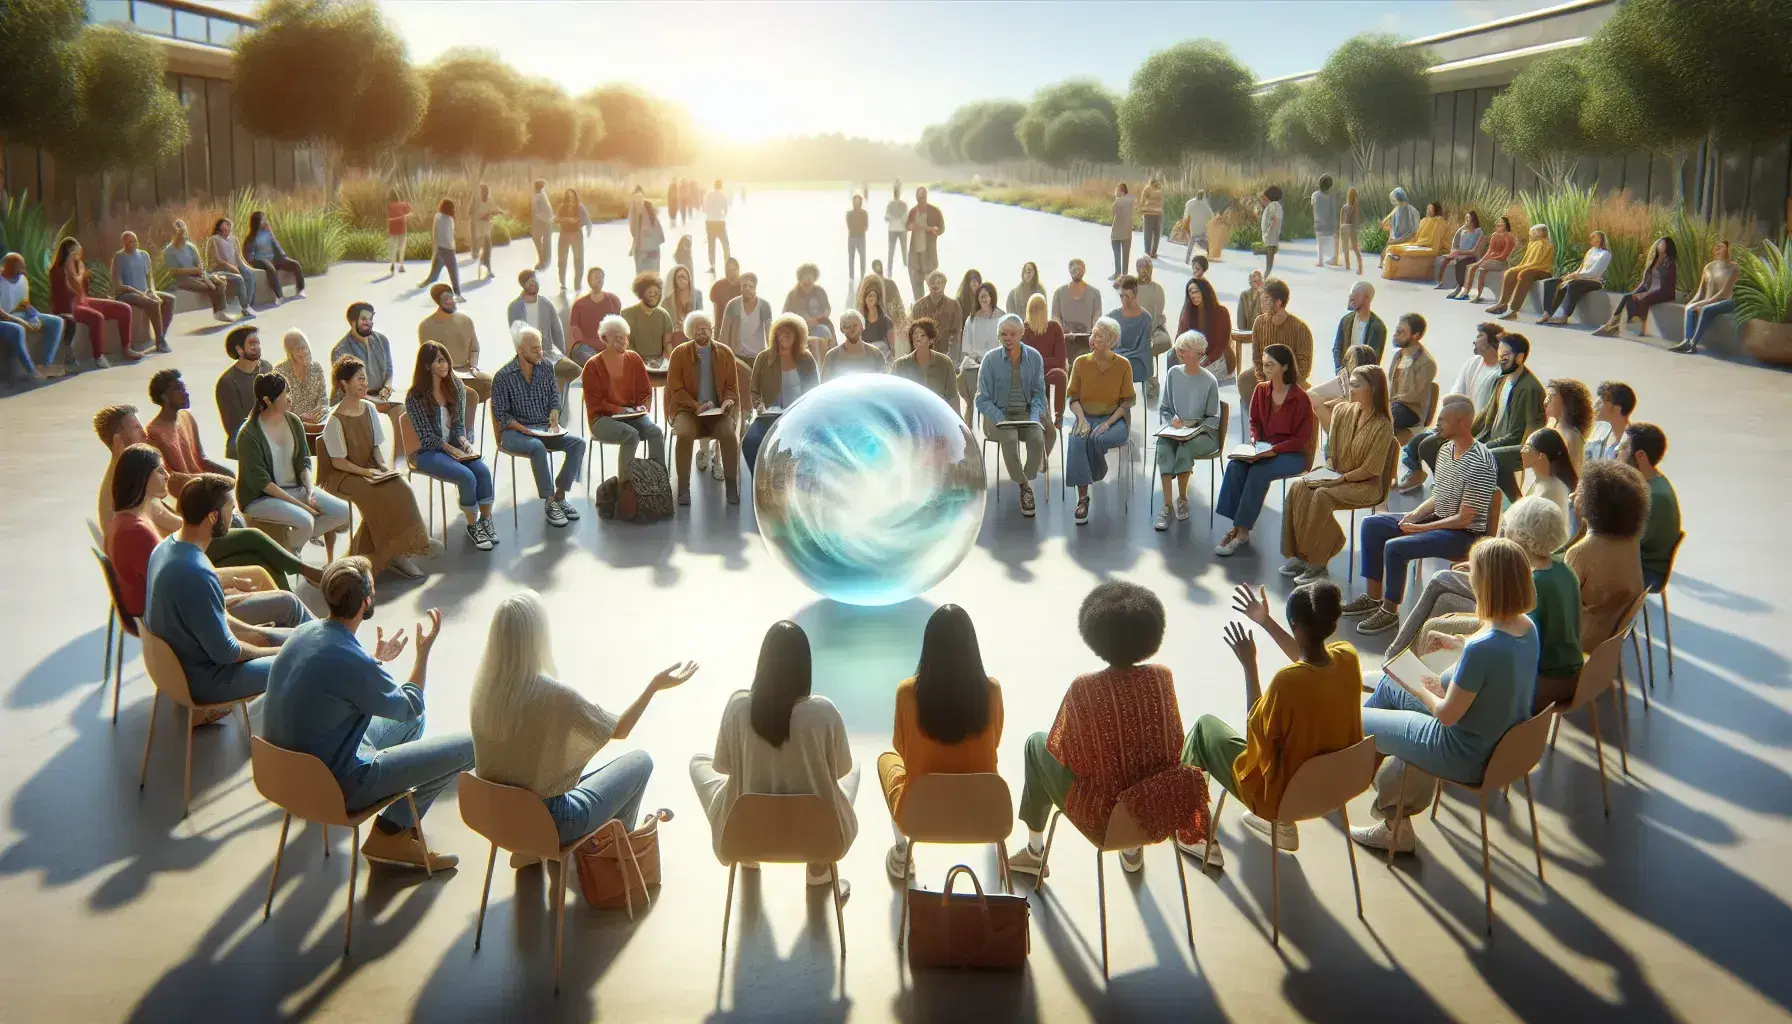 Grupo diverso de personas en círculo participando en actividad grupal al aire libre con esfera transparente flotante en el centro, en un día soleado sin nubes.